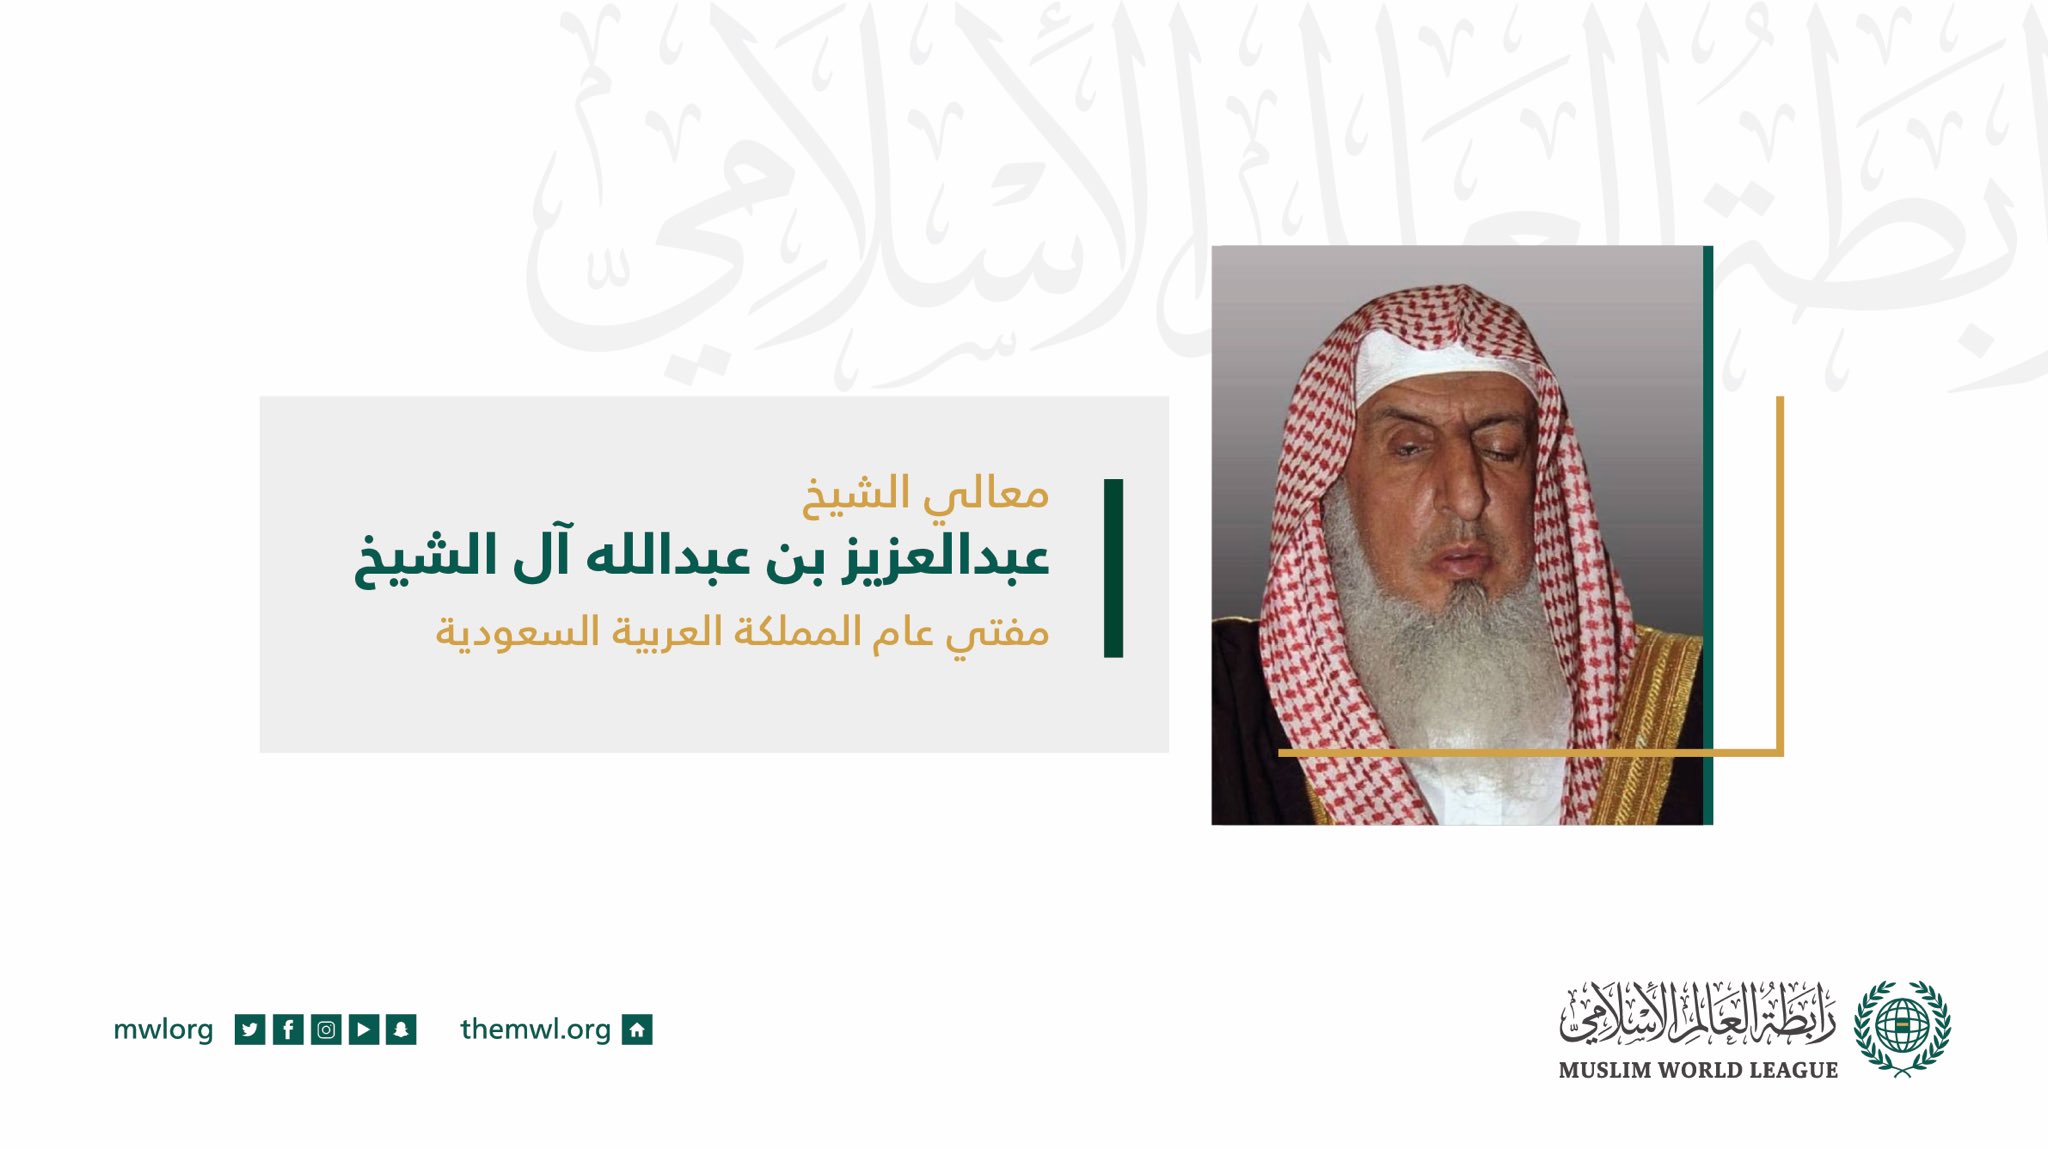 سماحة مفتي عام المملكة العربية السعودية، الشيخ عبدالعزيز آل الشيخ، في كلمته الافتتاحية لأعمال المجلس